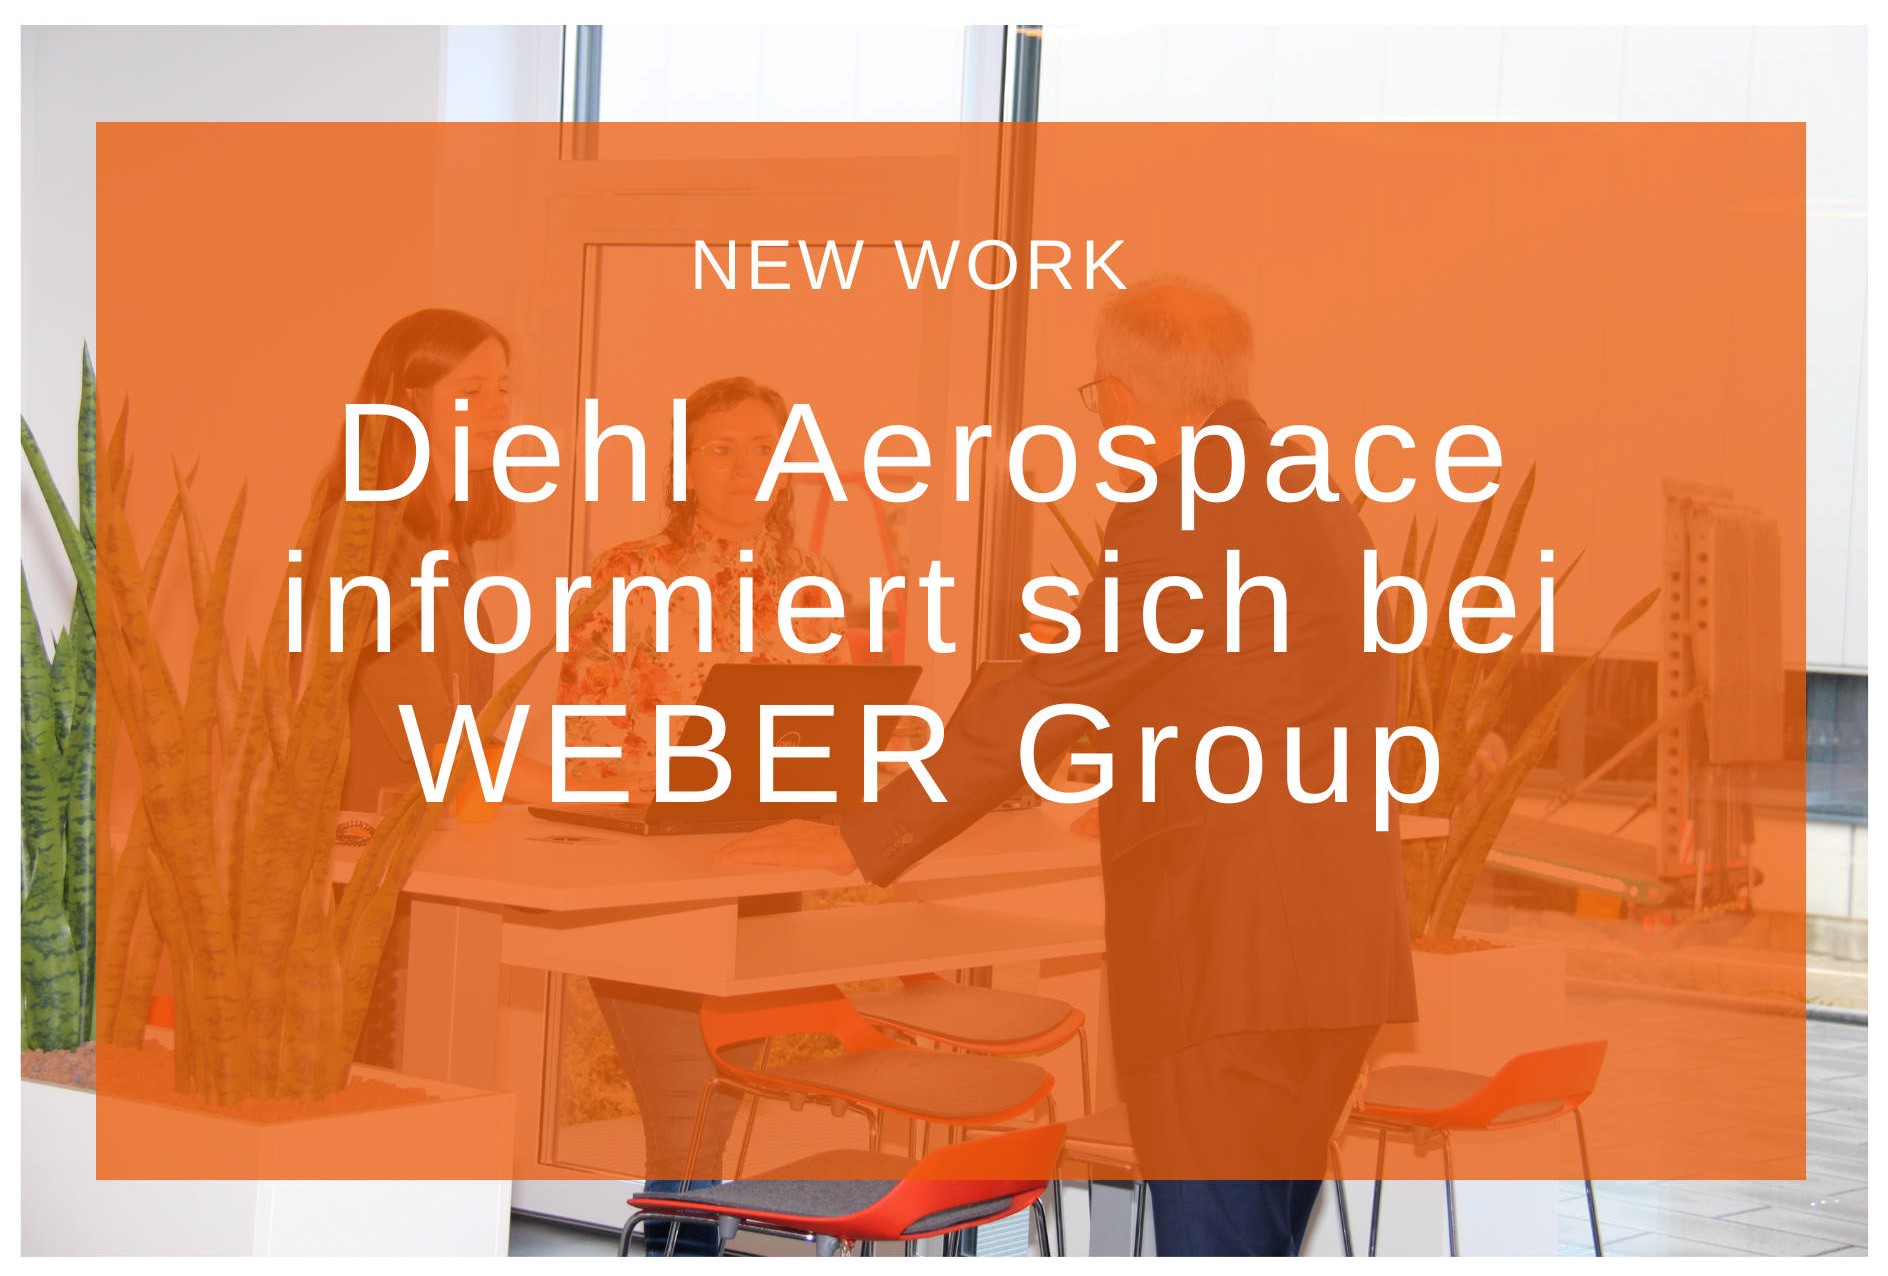 Diehl Aerospace besucht Weber